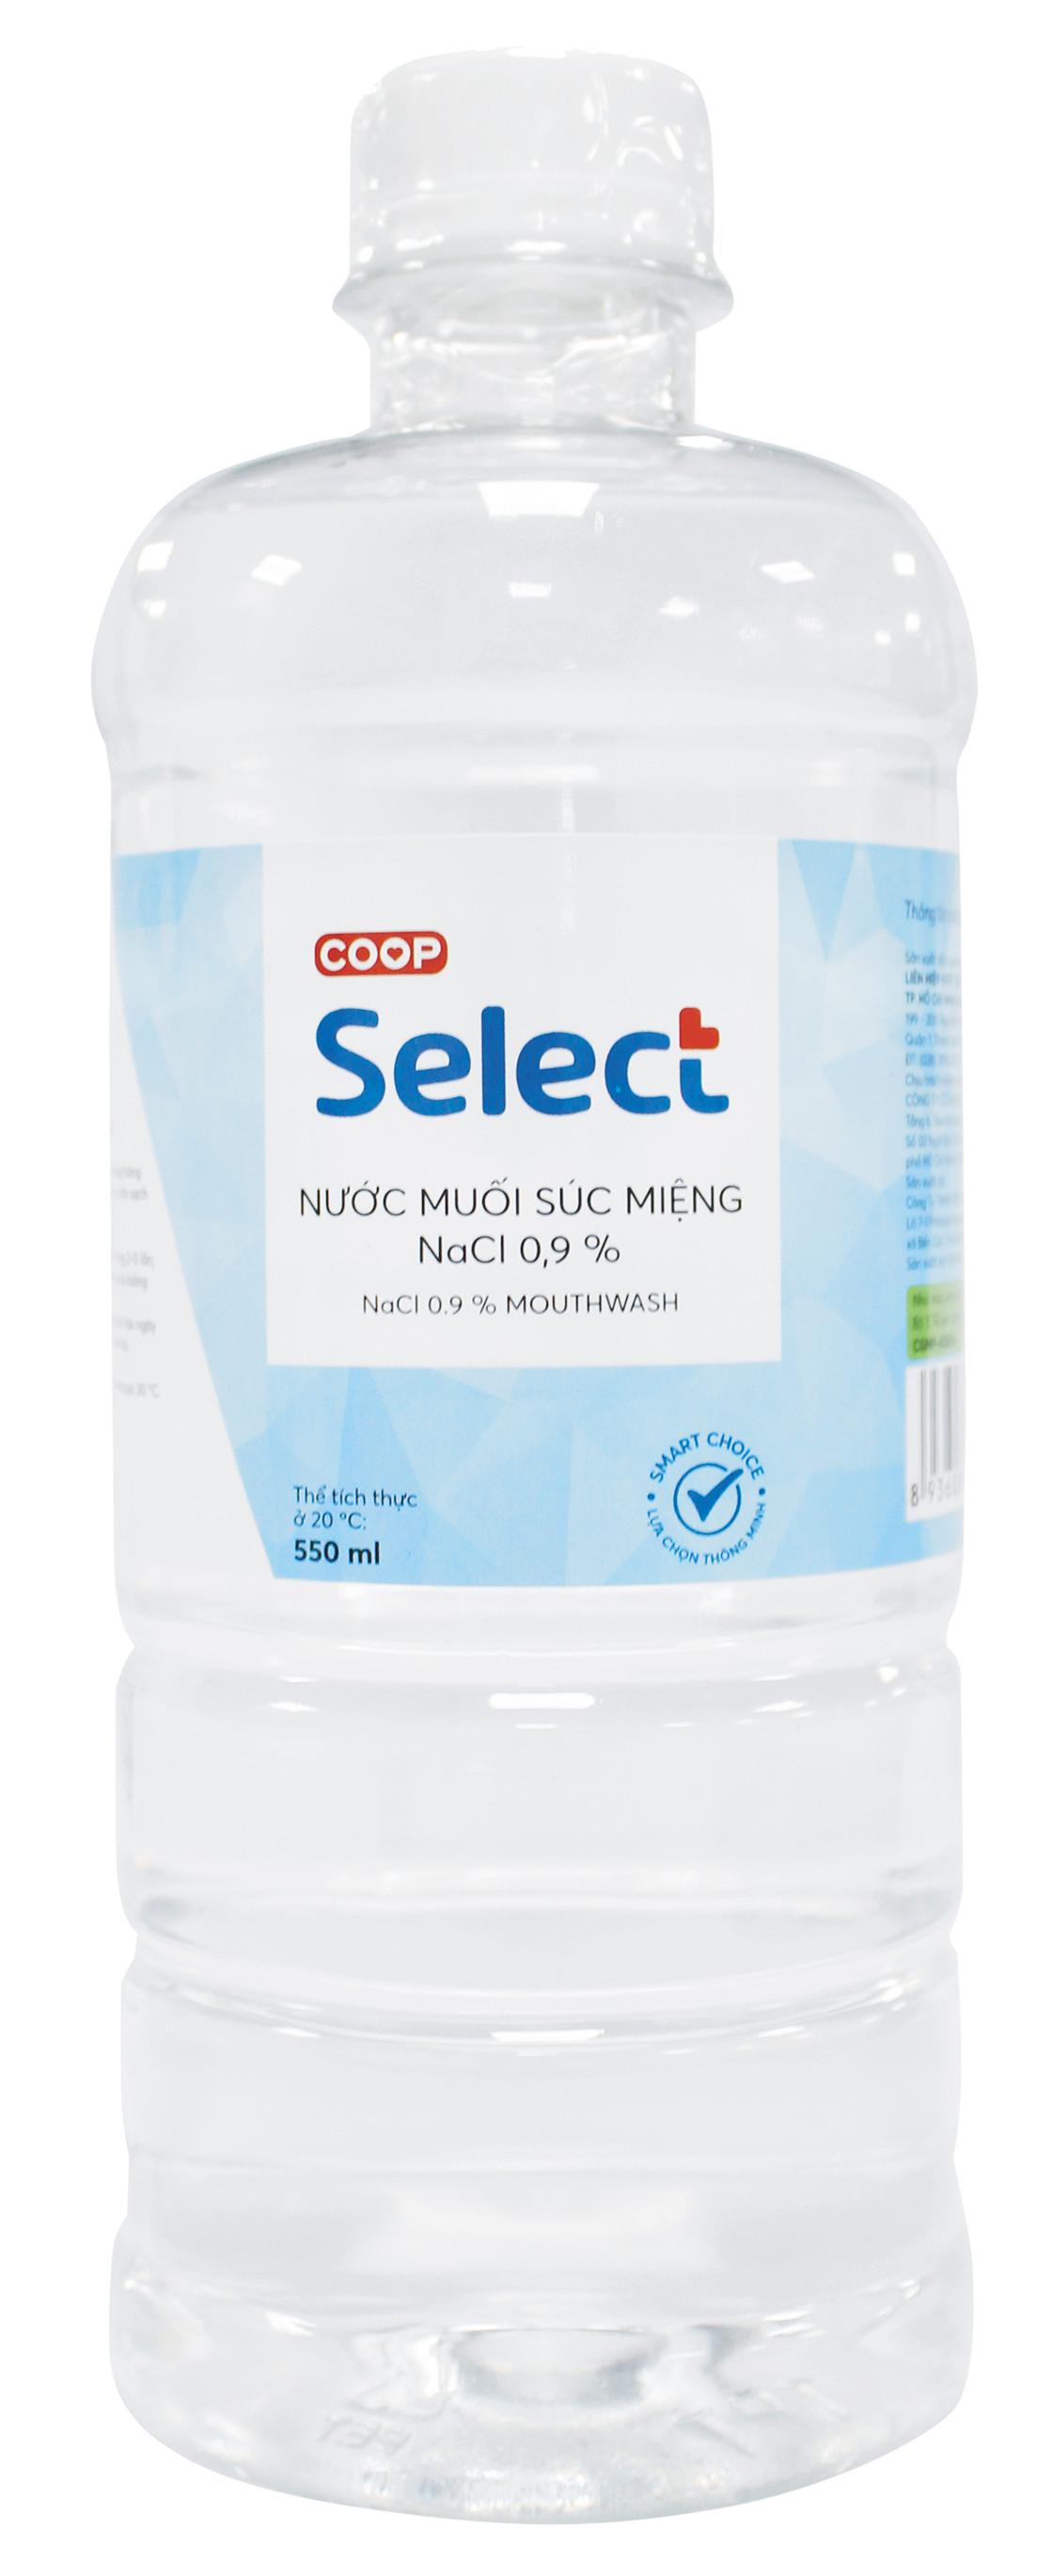 [Chỉ giao HCM] Nước súc miệng NaCl 0.9% Coop Select 550ml - 3501642